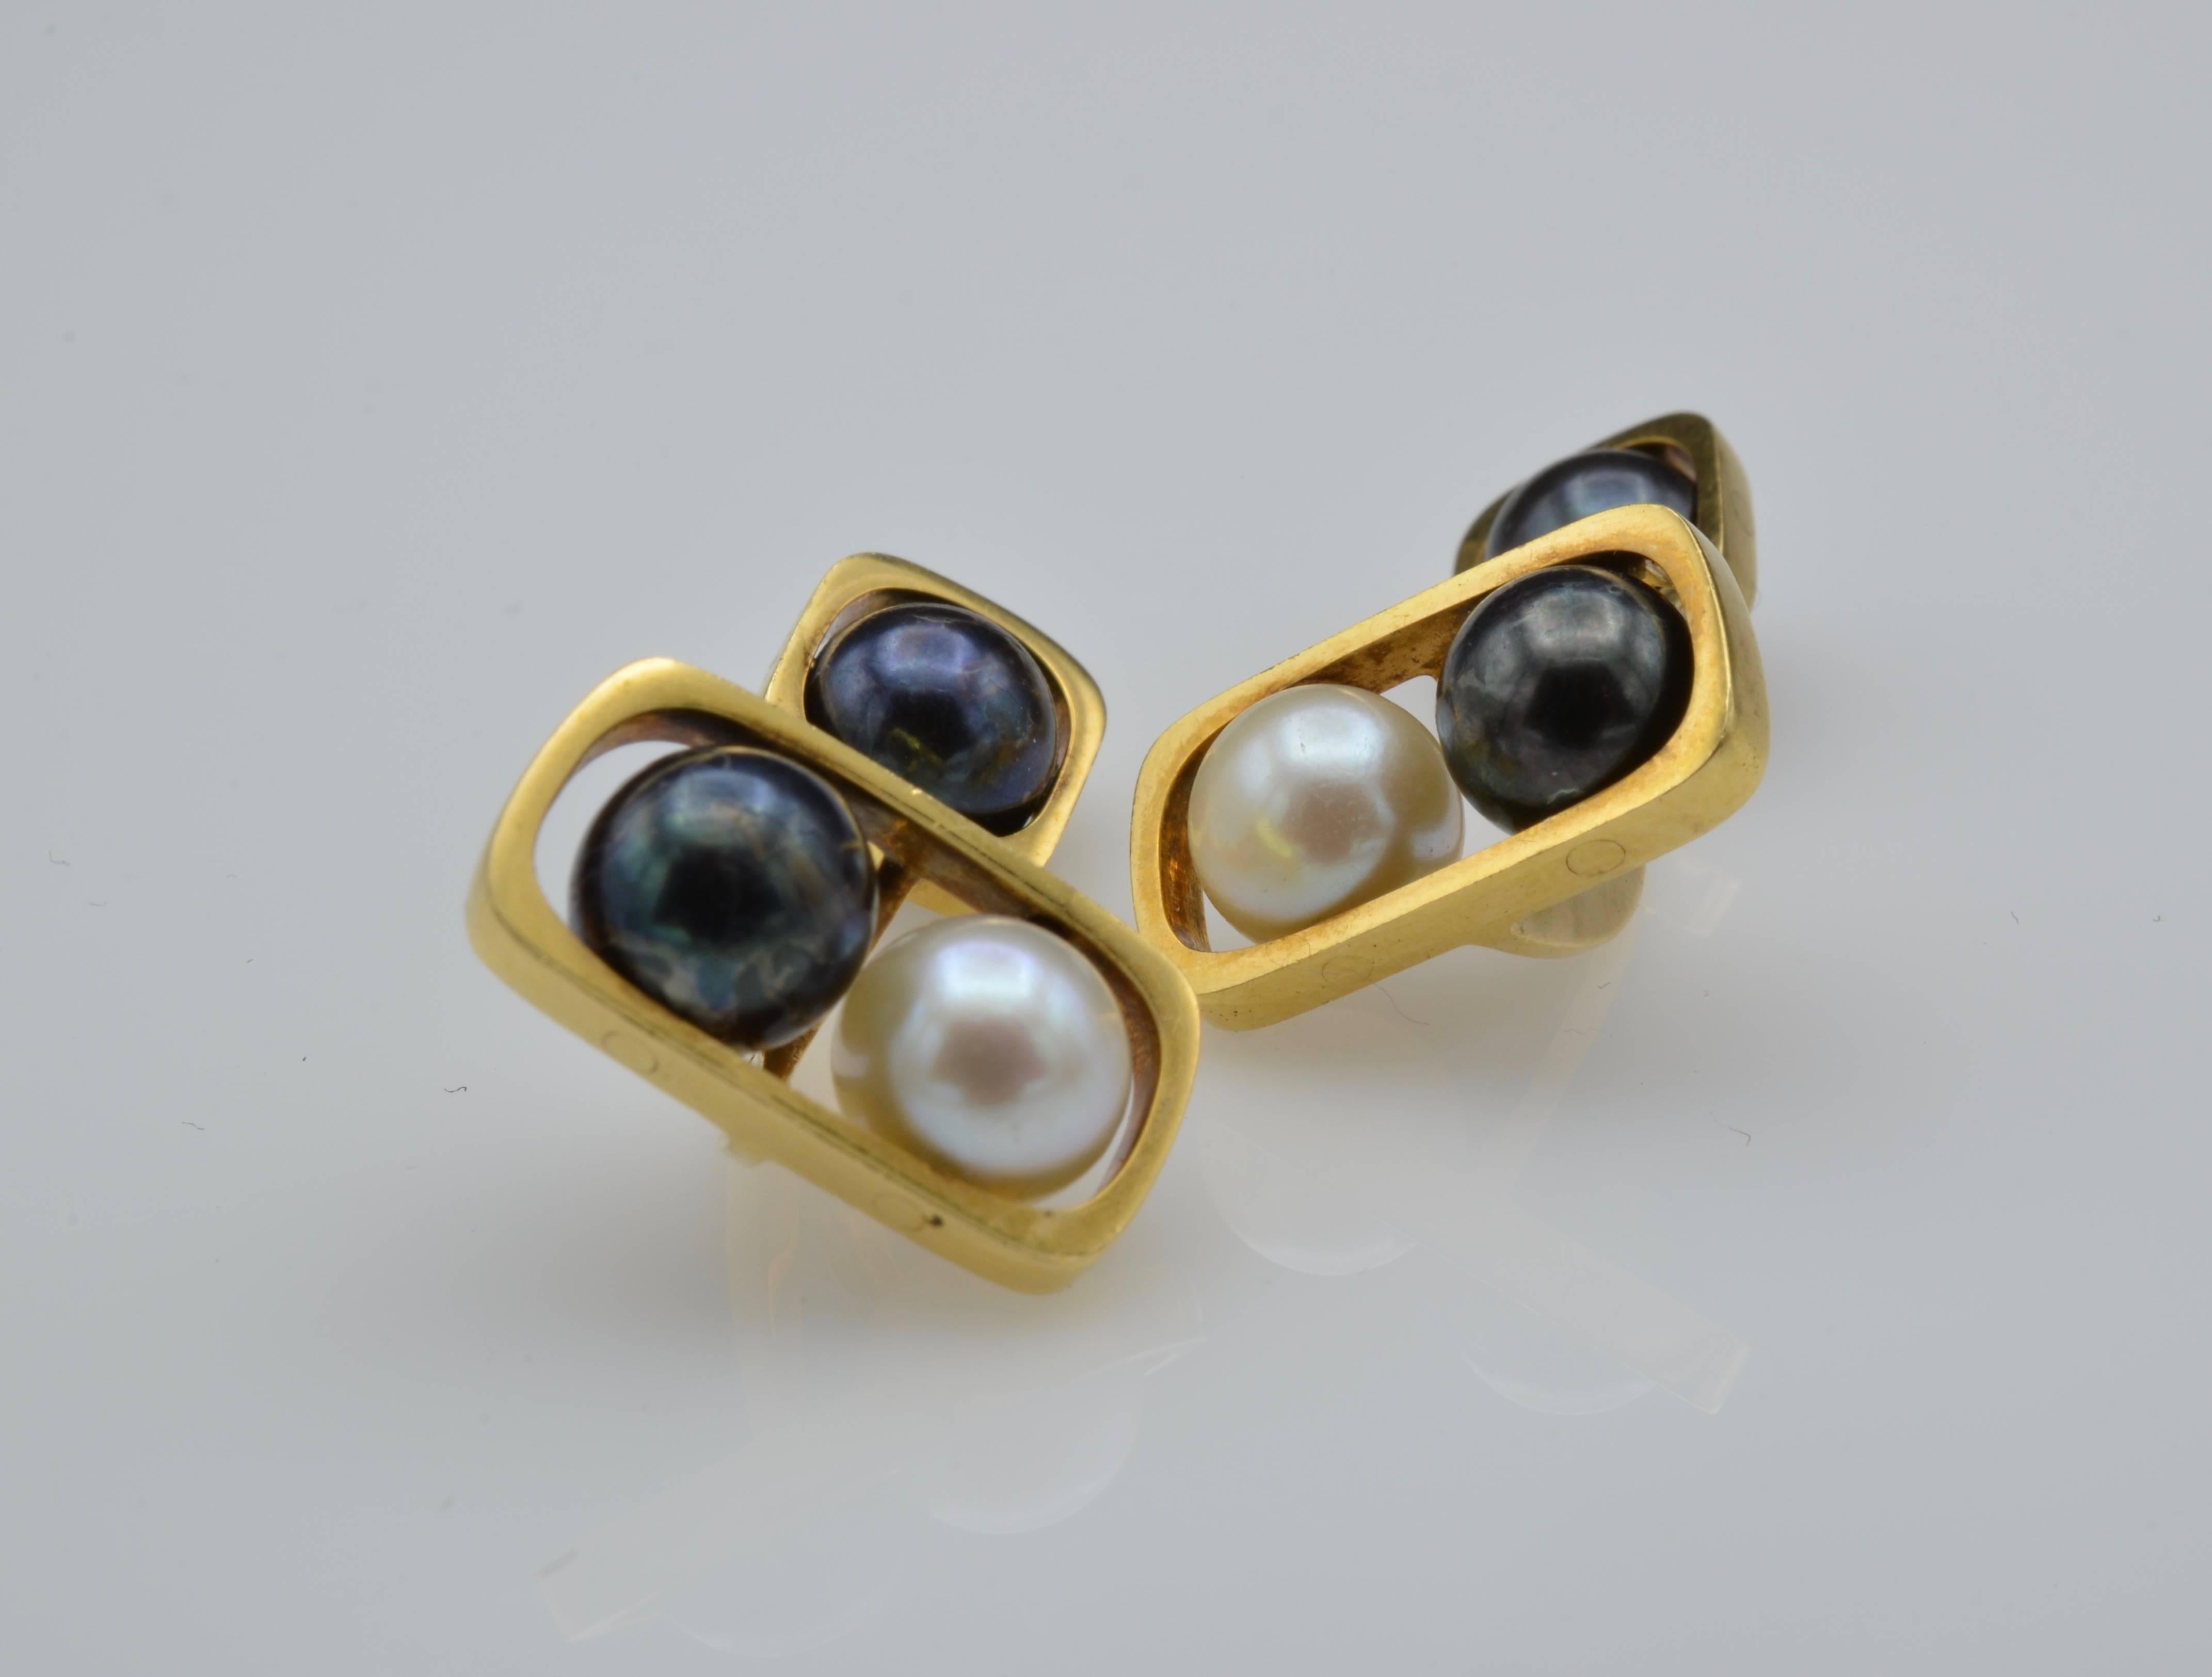 Diese hübschen Manschettenknöpfe aus Perlen und Gold sind wunderschön gestaltet und mit weißen und schwarzen Perlen besetzt, die an einem modernen Rahmen aus 18-karätigem Gold hängen. Die Perlen drehen sich und setzen einen wunderschönen Akzent an